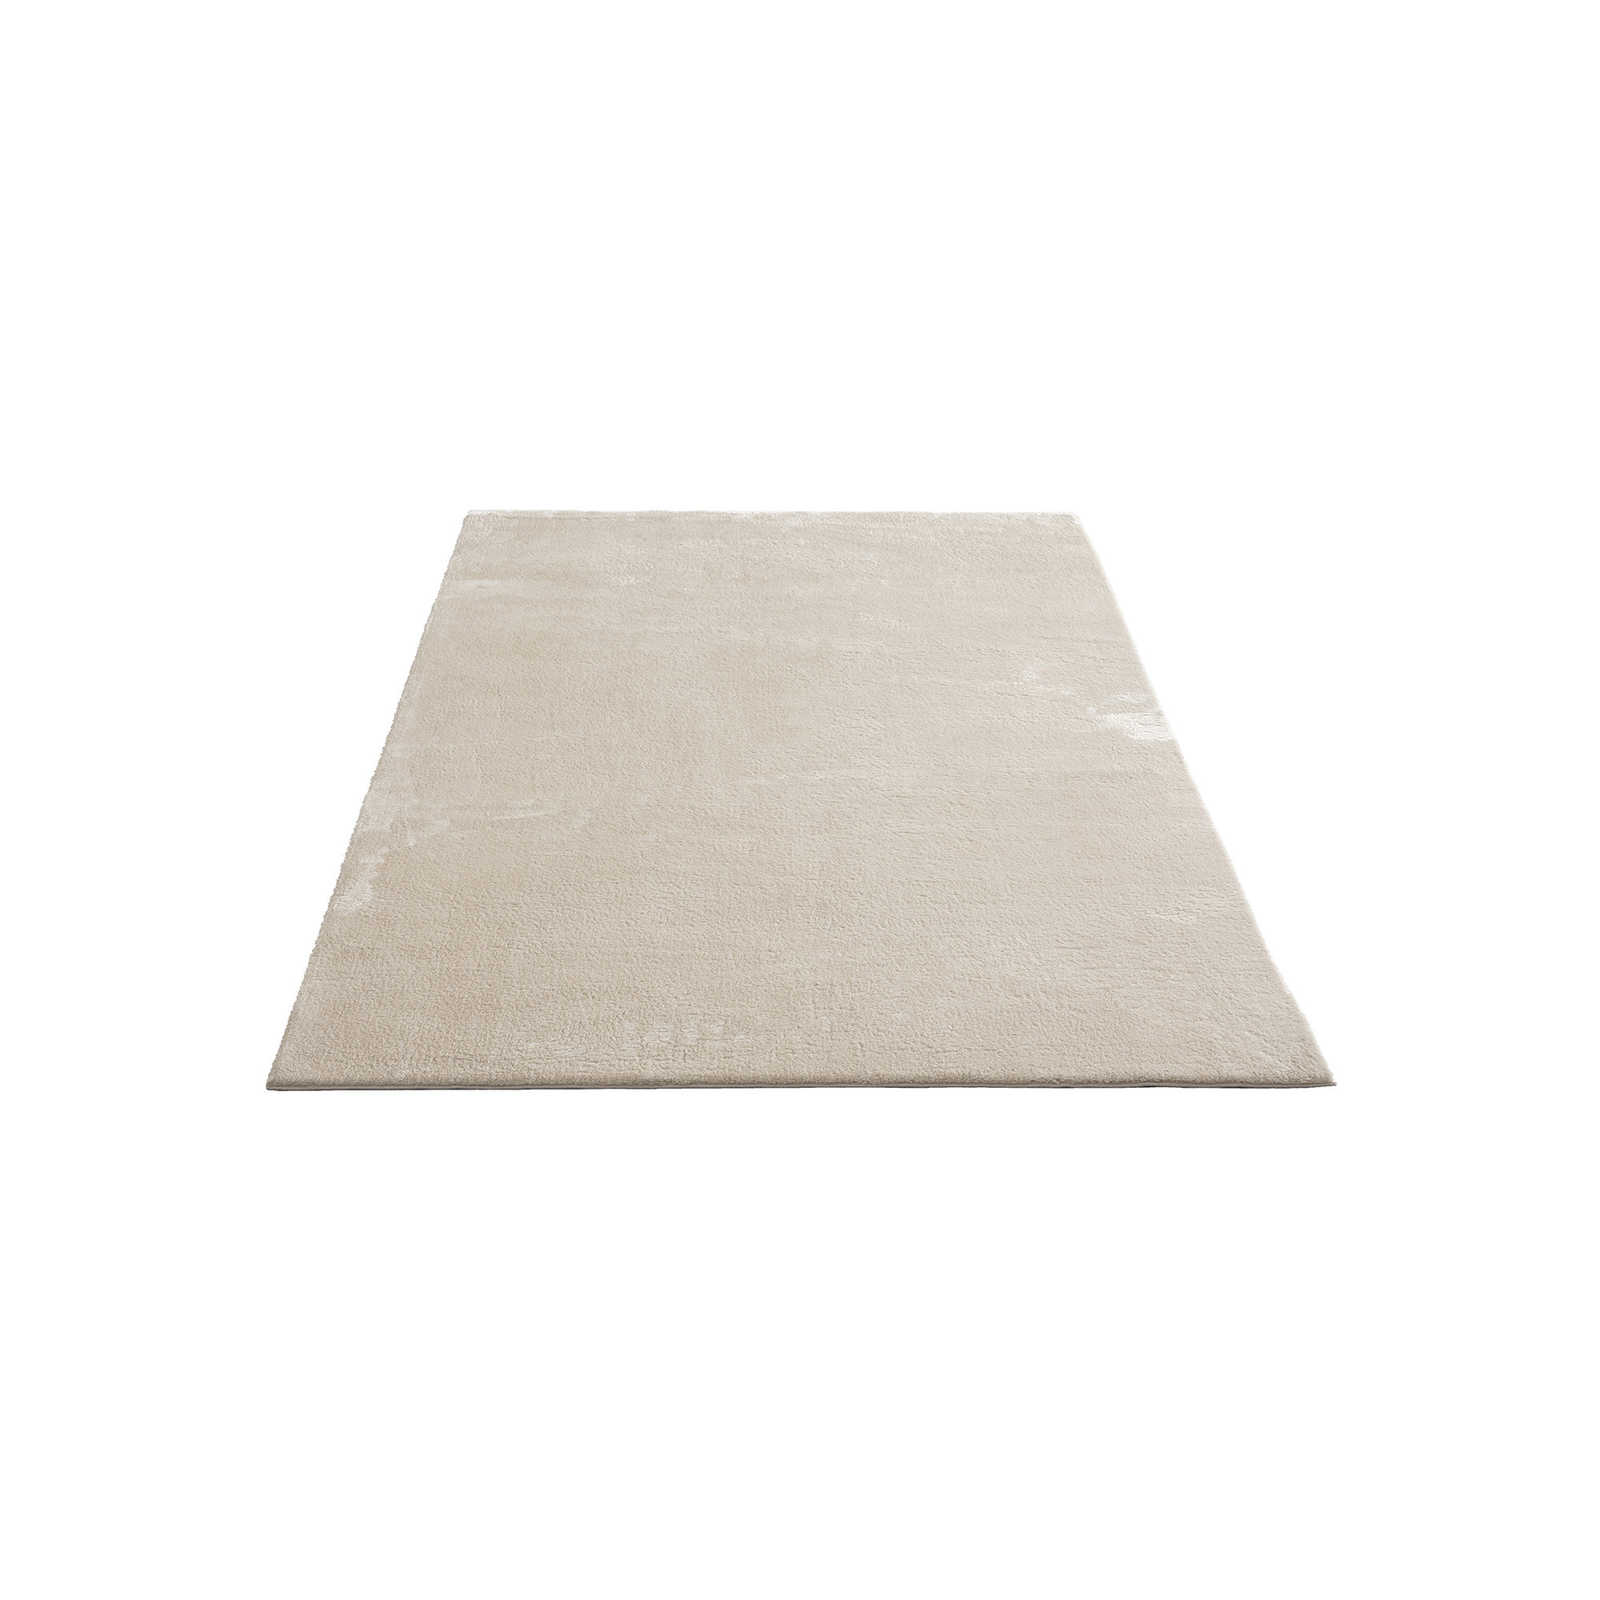 Soft high pile carpet in beige - 230 x 160 cm
